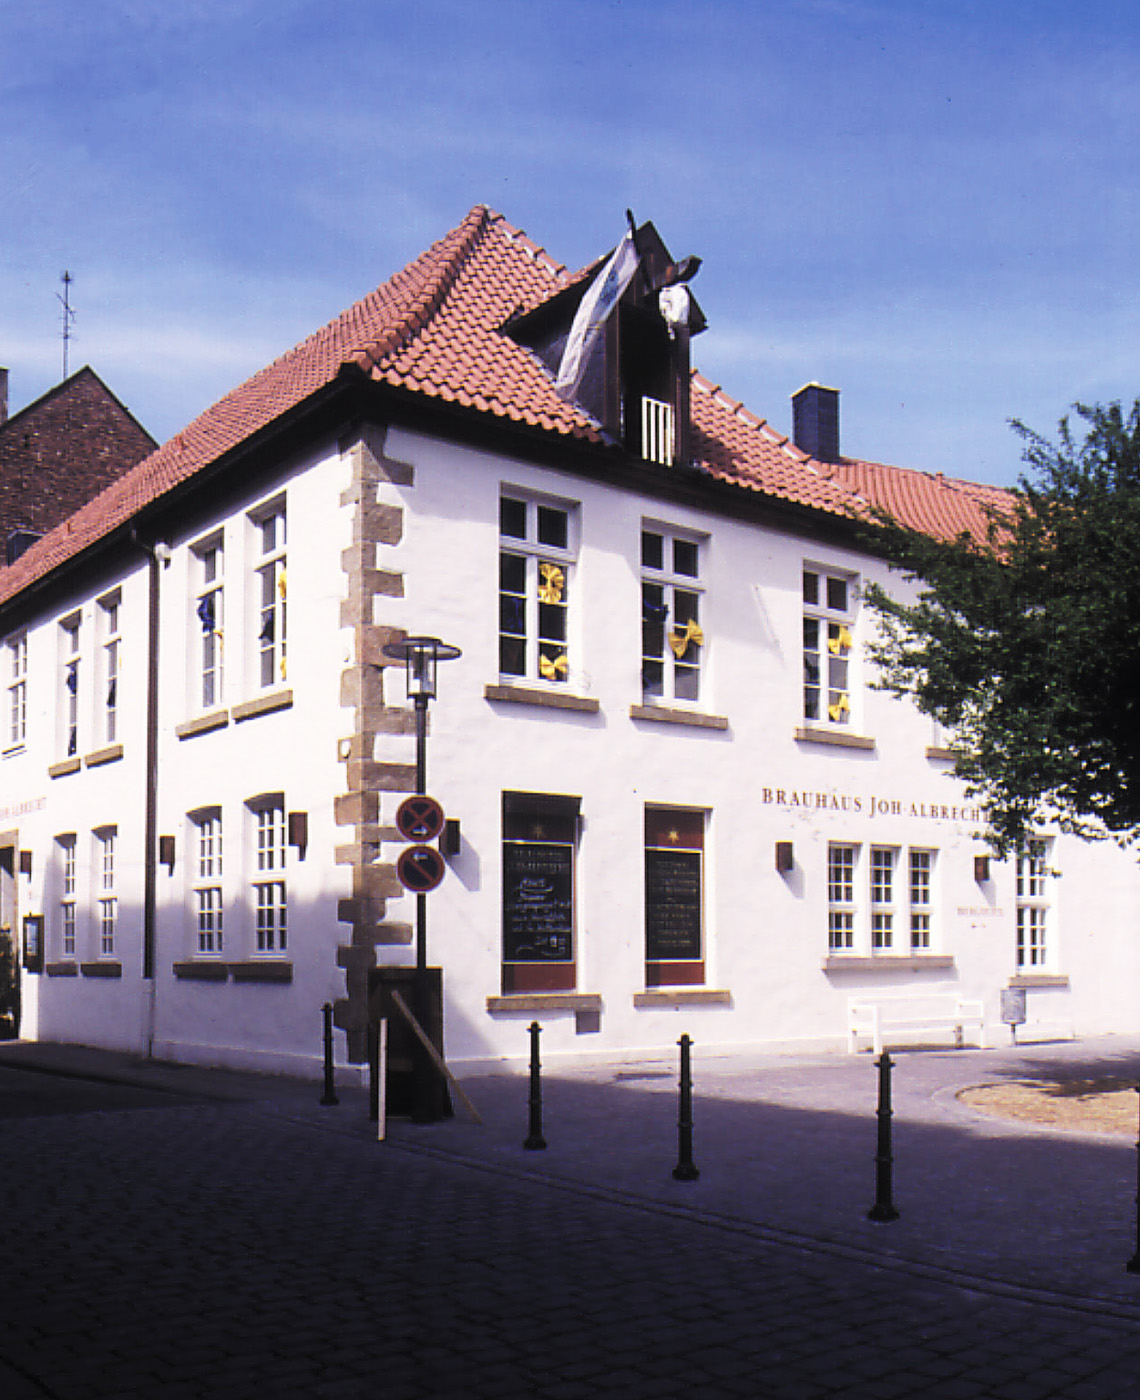 Exterior of Brauhaus Joh. Albrecht